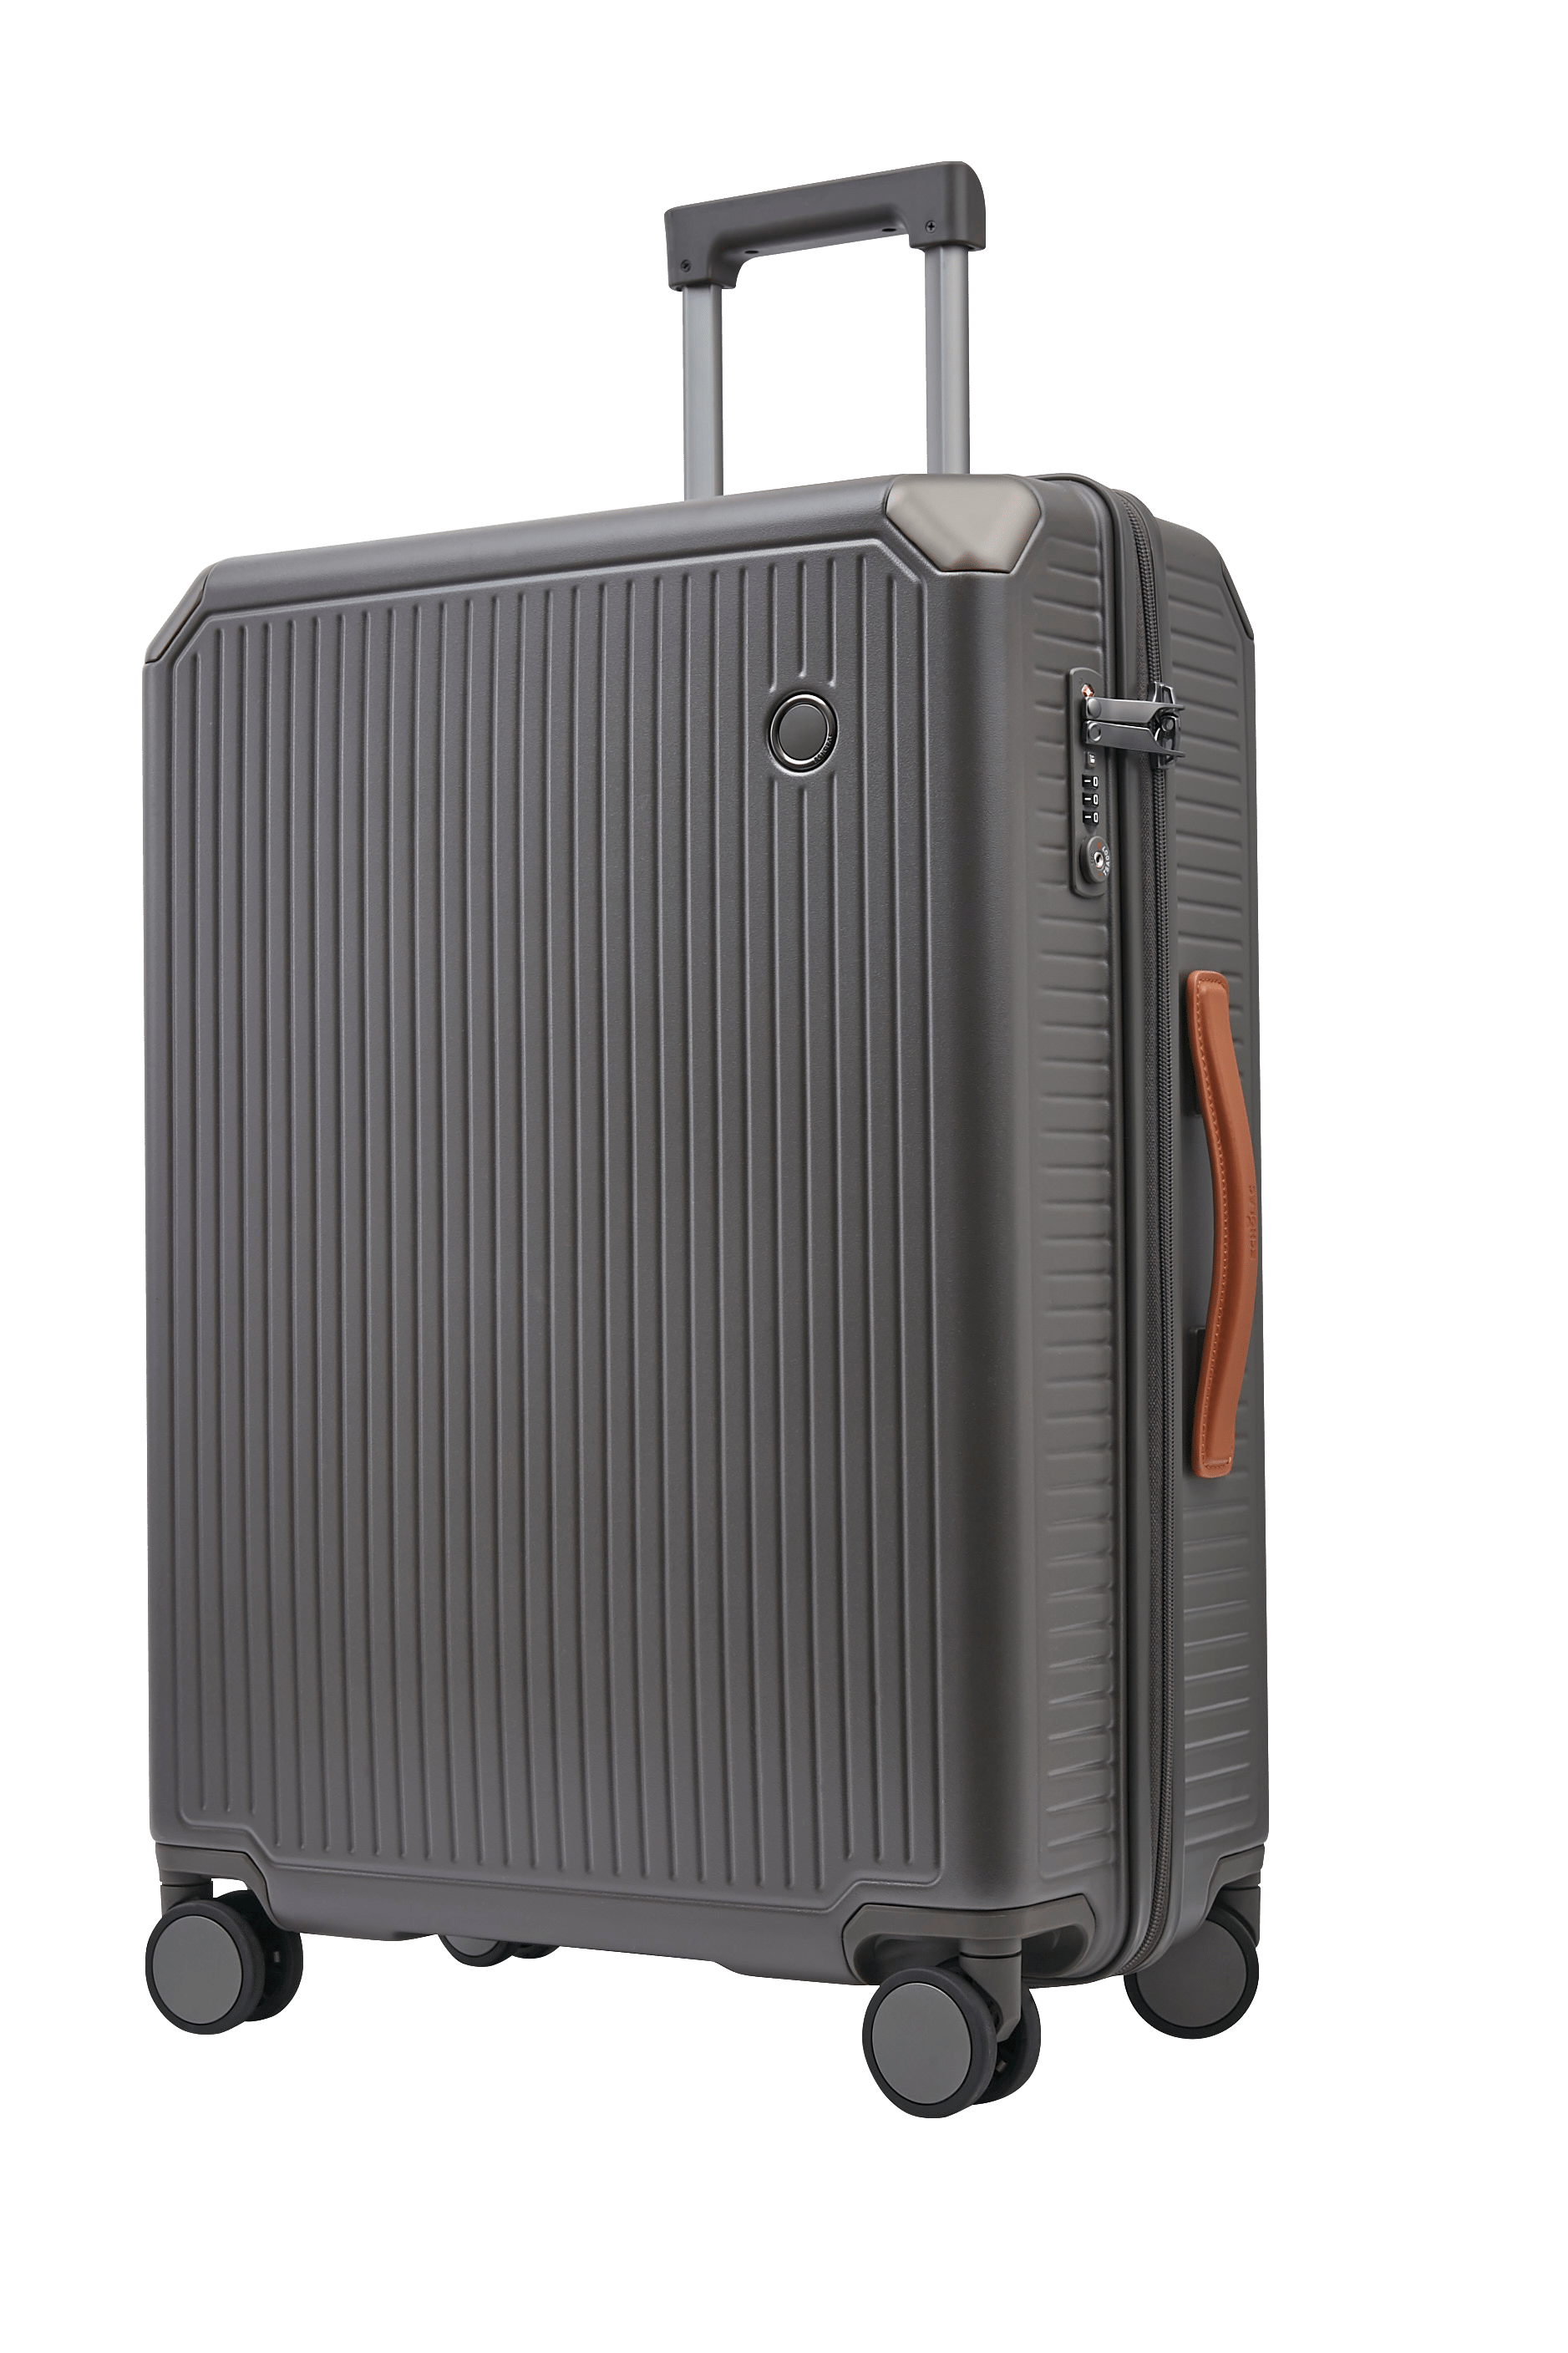 Echolac Shogun 24" 4 Double Wheel Check-In Luggage Trolley Grey - PC148 24 Grey